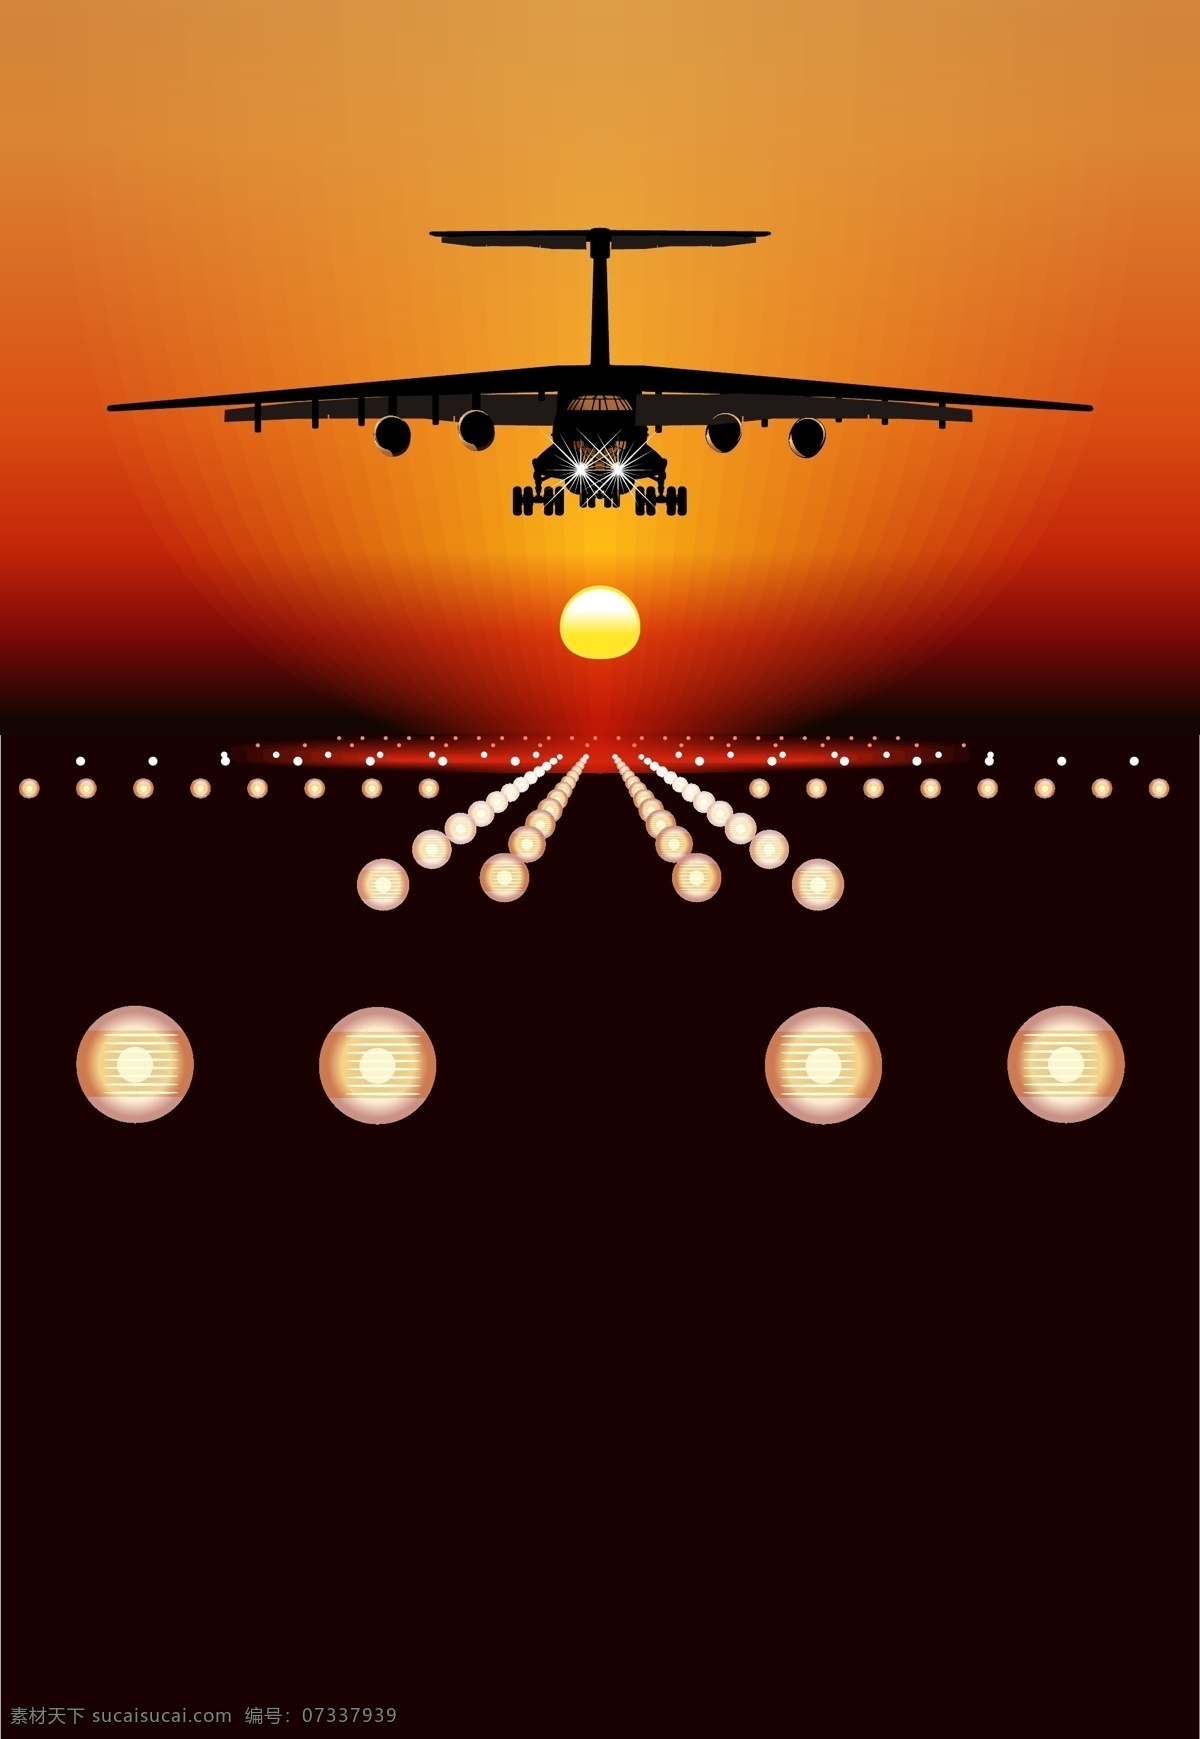 机场 降落 飞机 航天飞机 机场降落 客机 喷气式飞机 矢量飞机 卡通飞机 交通工具 现代科技 矢量素材 黑色